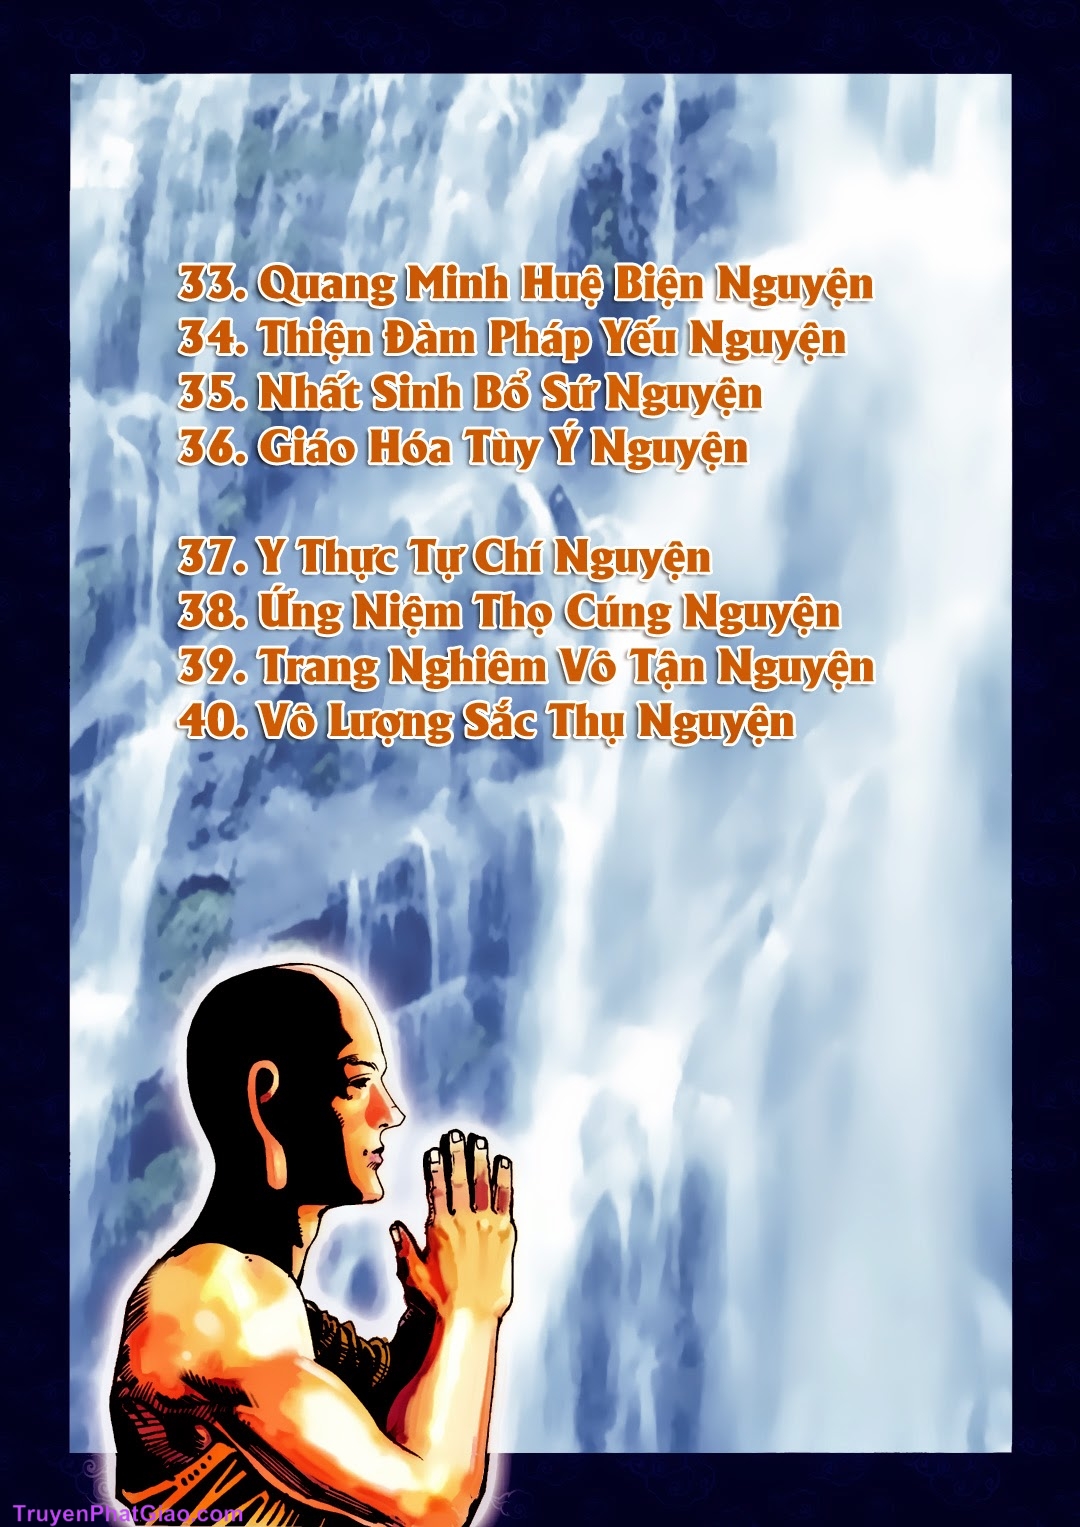 Truyện Tranh Phật Giáo - A Di Đà Phật Truyện page 17